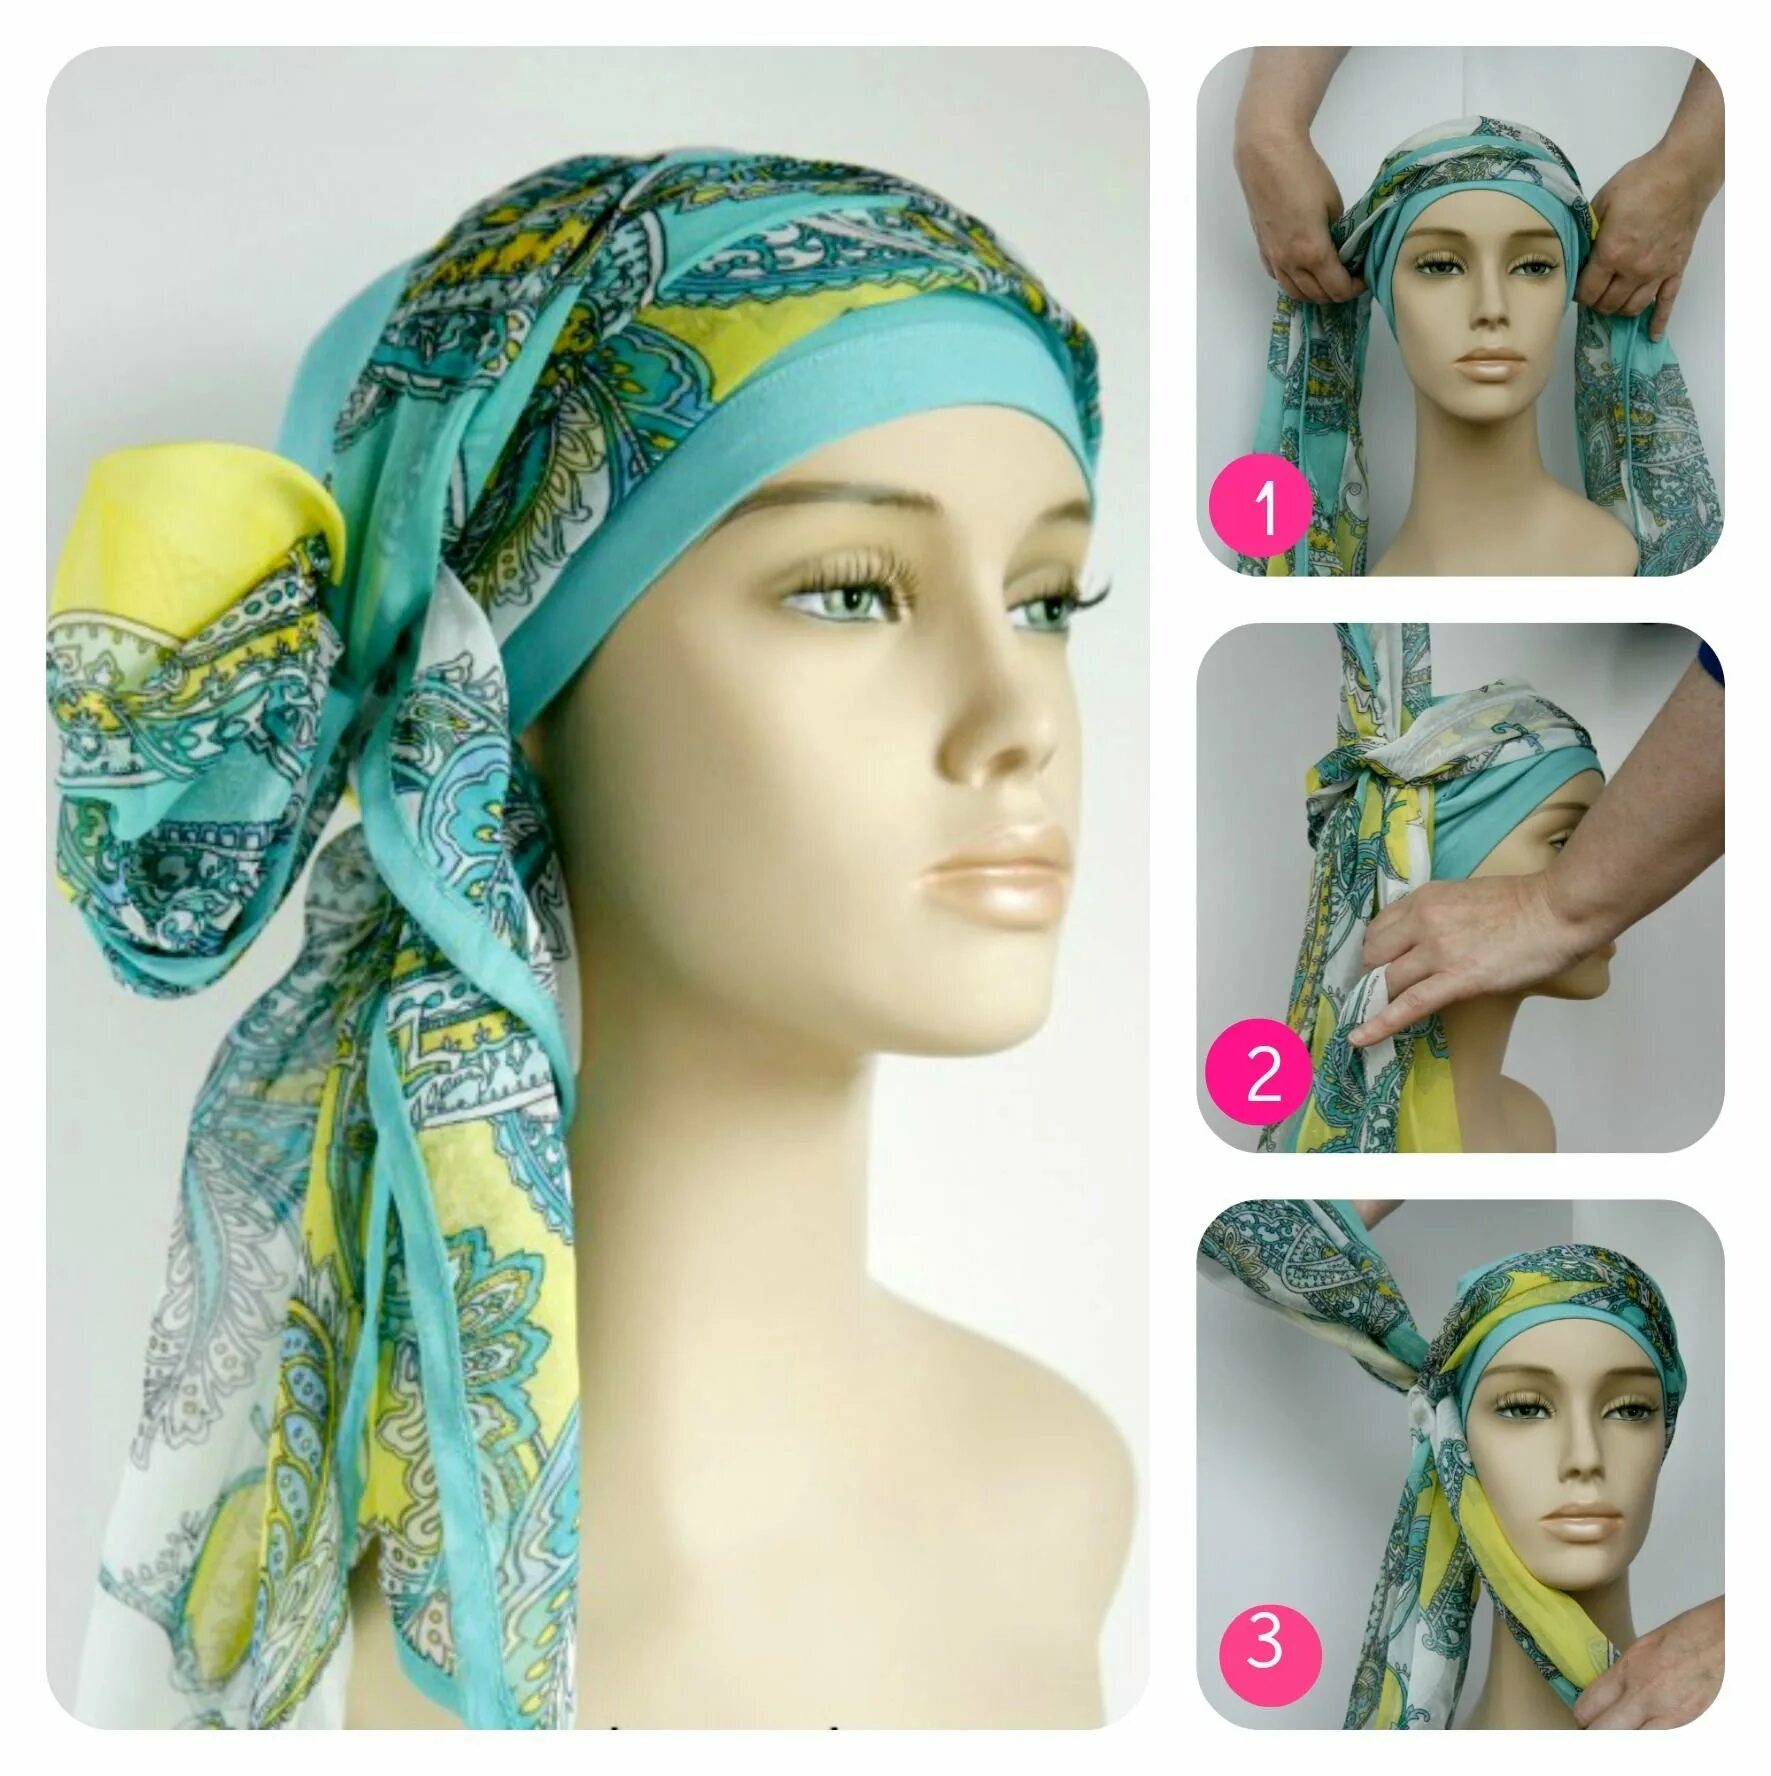 Летний платок на голову. Красивые платки на голову. Красиво повязать платок на голову. Готовые платки на голову. Как завязывать платок на голову красиво весной